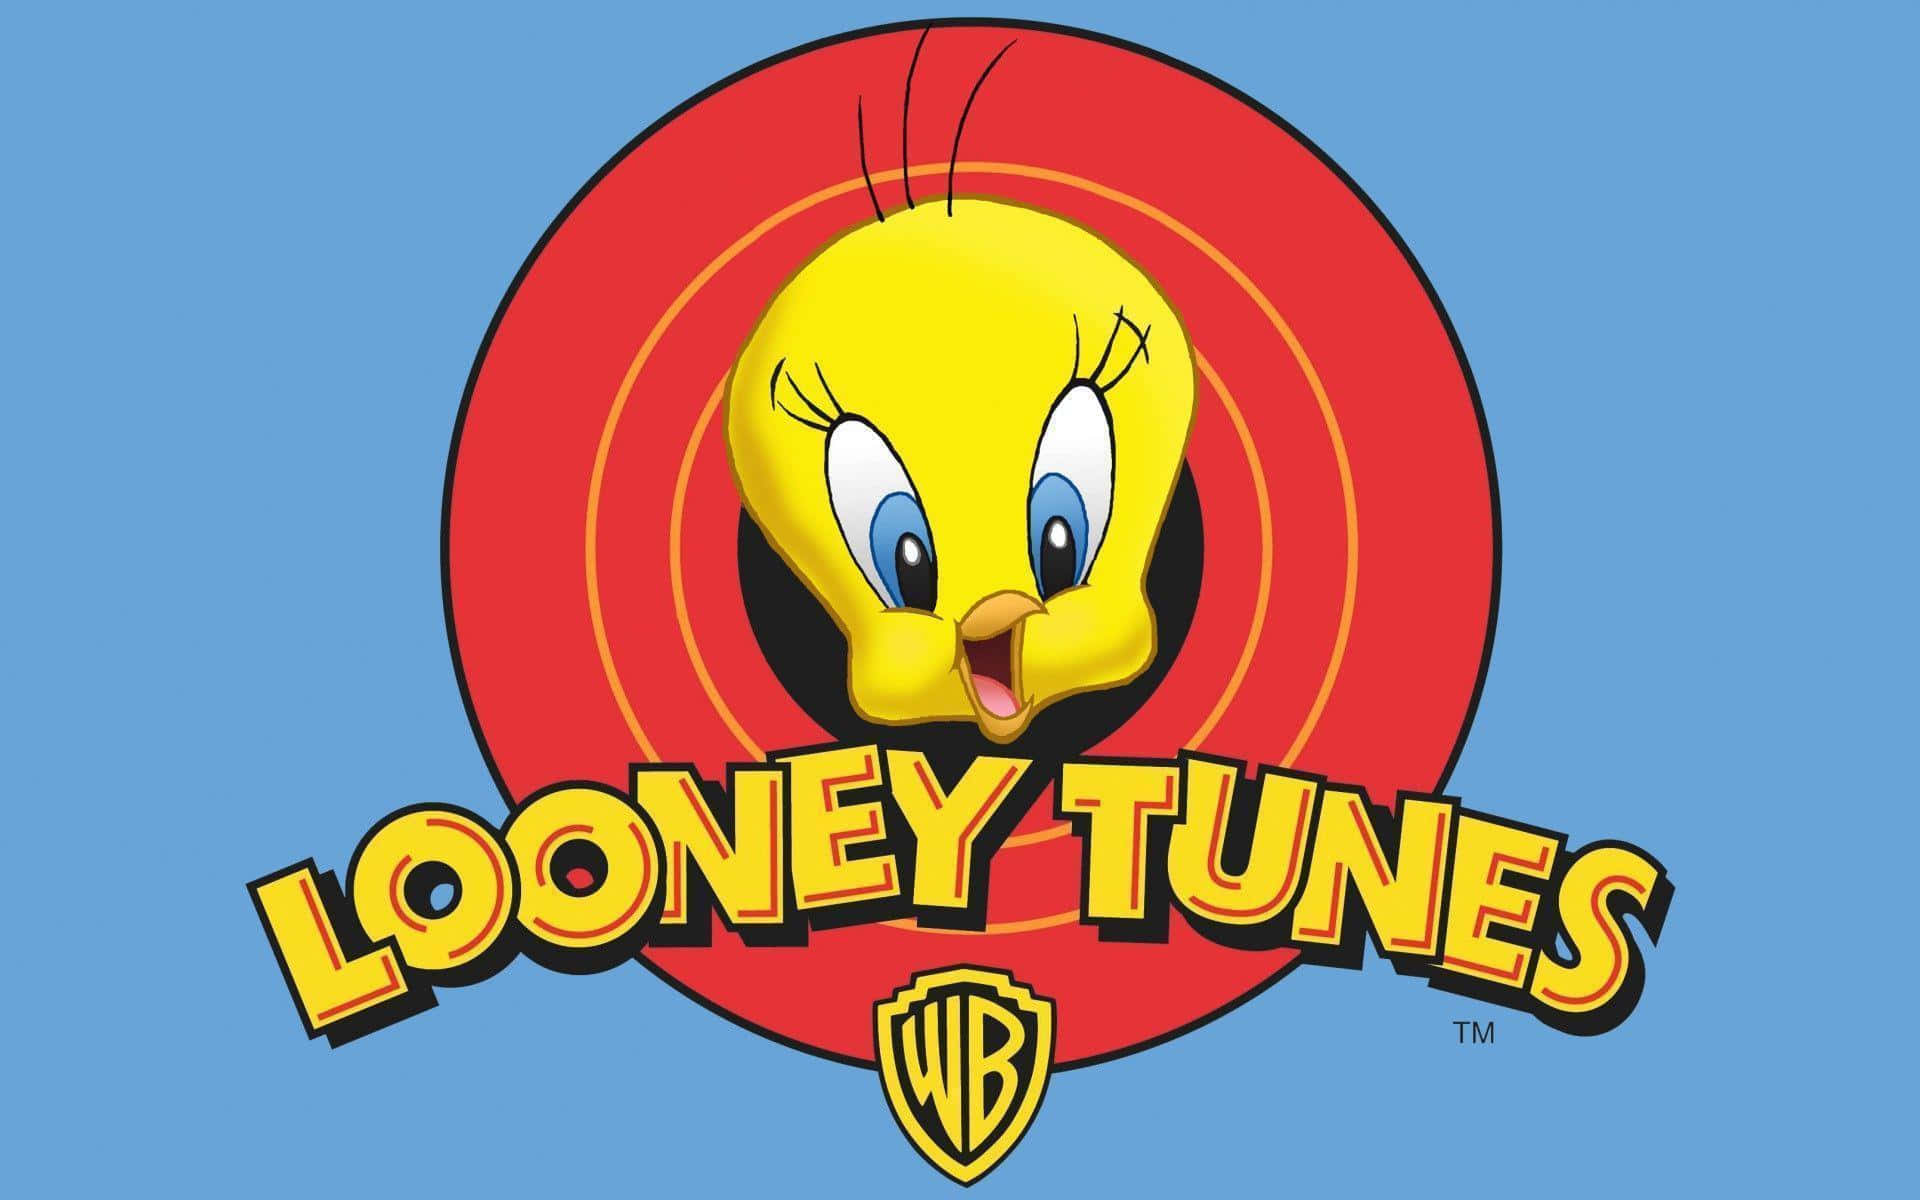 Fejrlatterens Hjerte Med Looney Tunes.